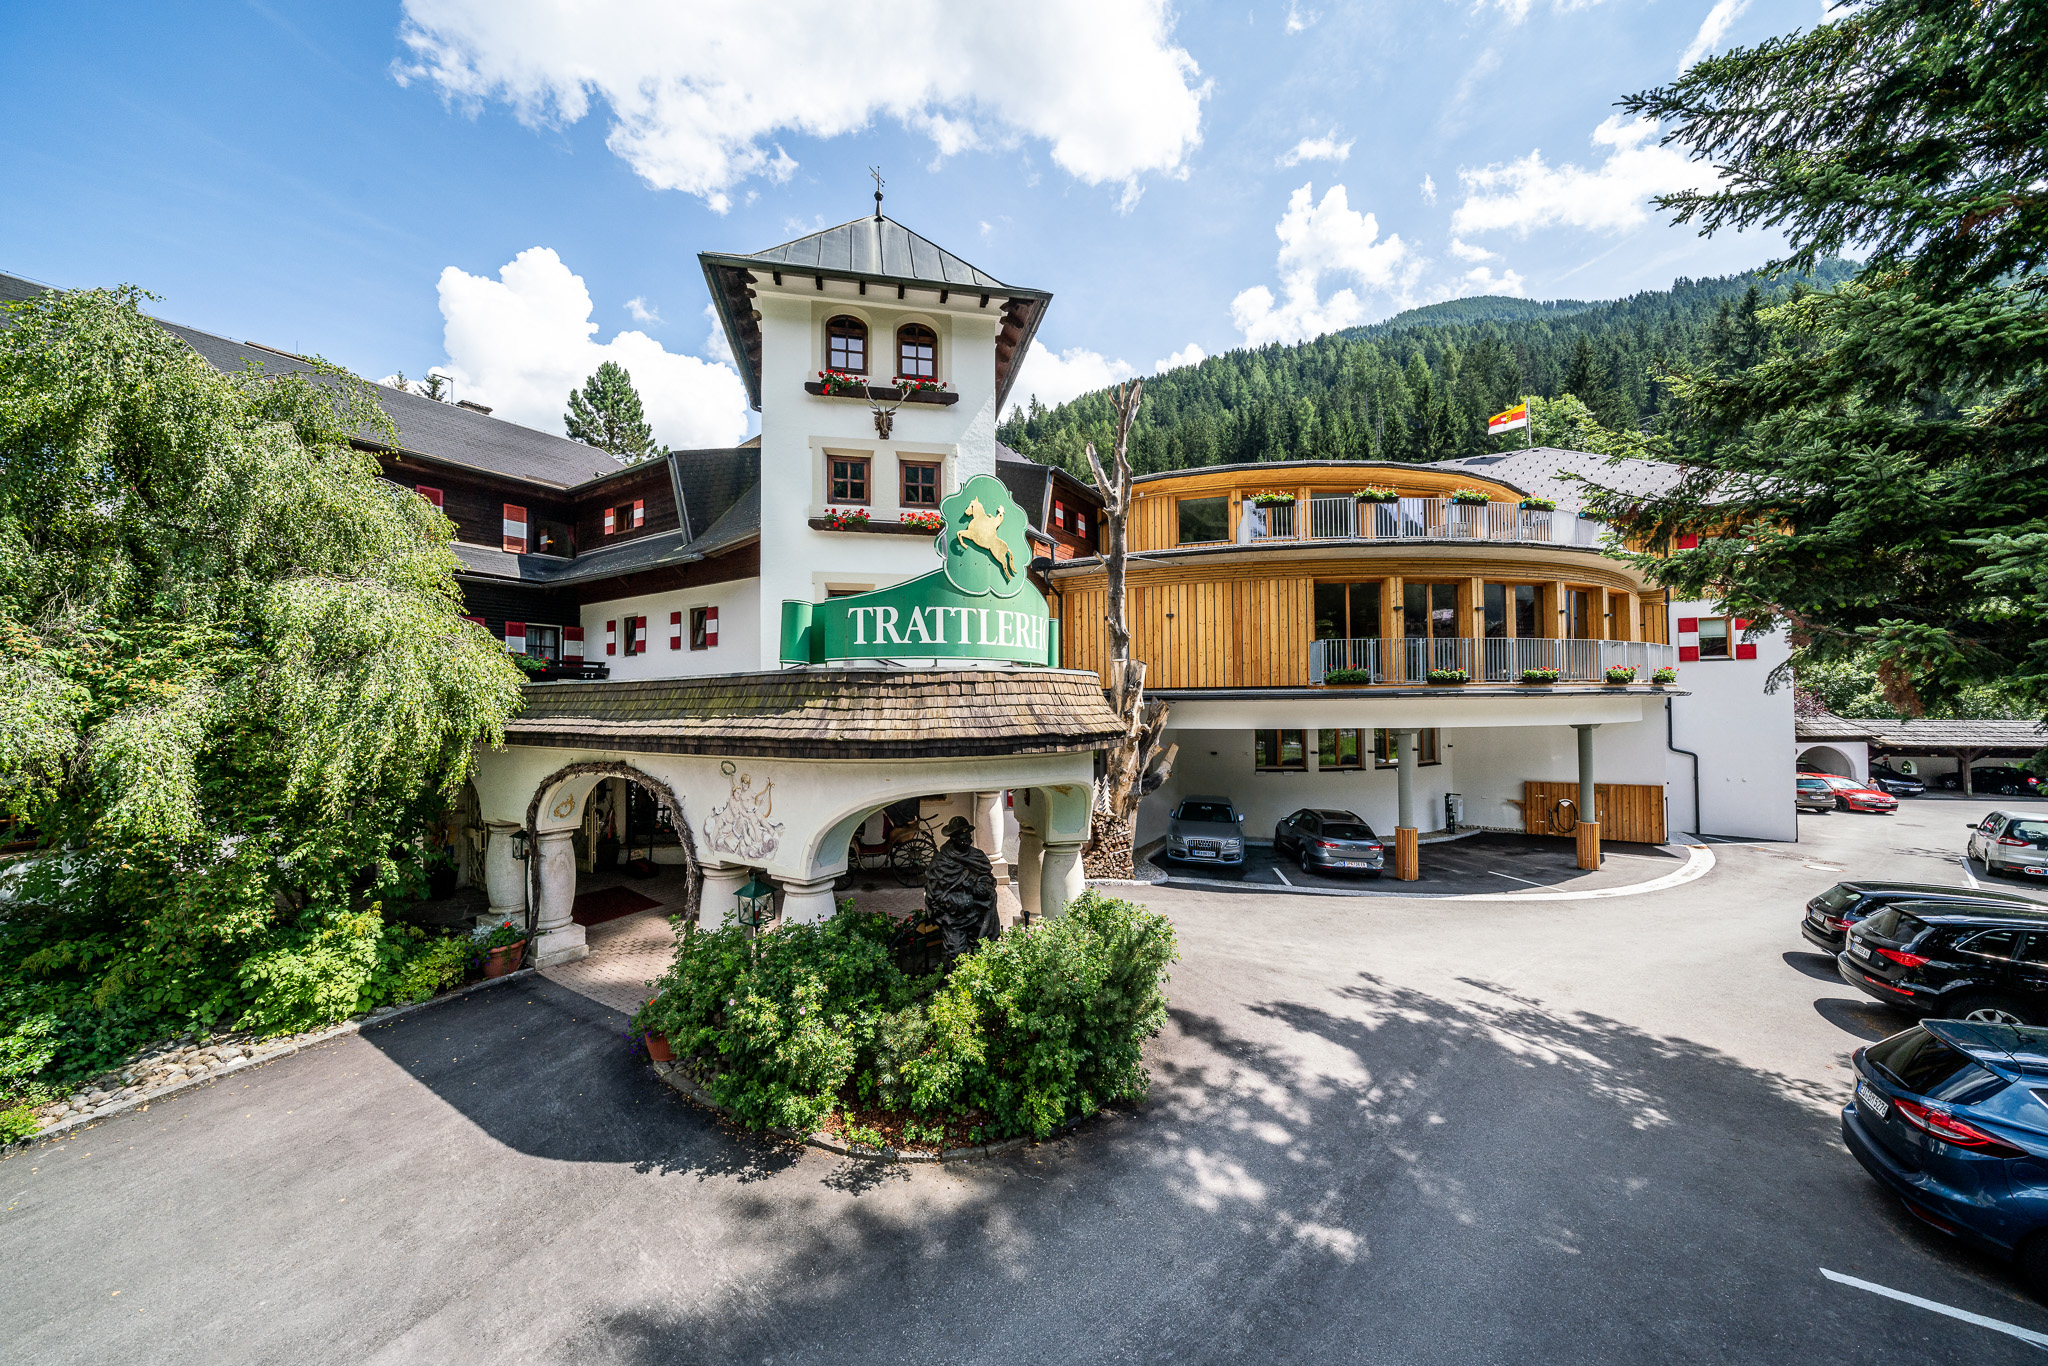 600 € Wertgutschein für das Hotel GUT Trattlerhof in Bad Kleinkirchheim